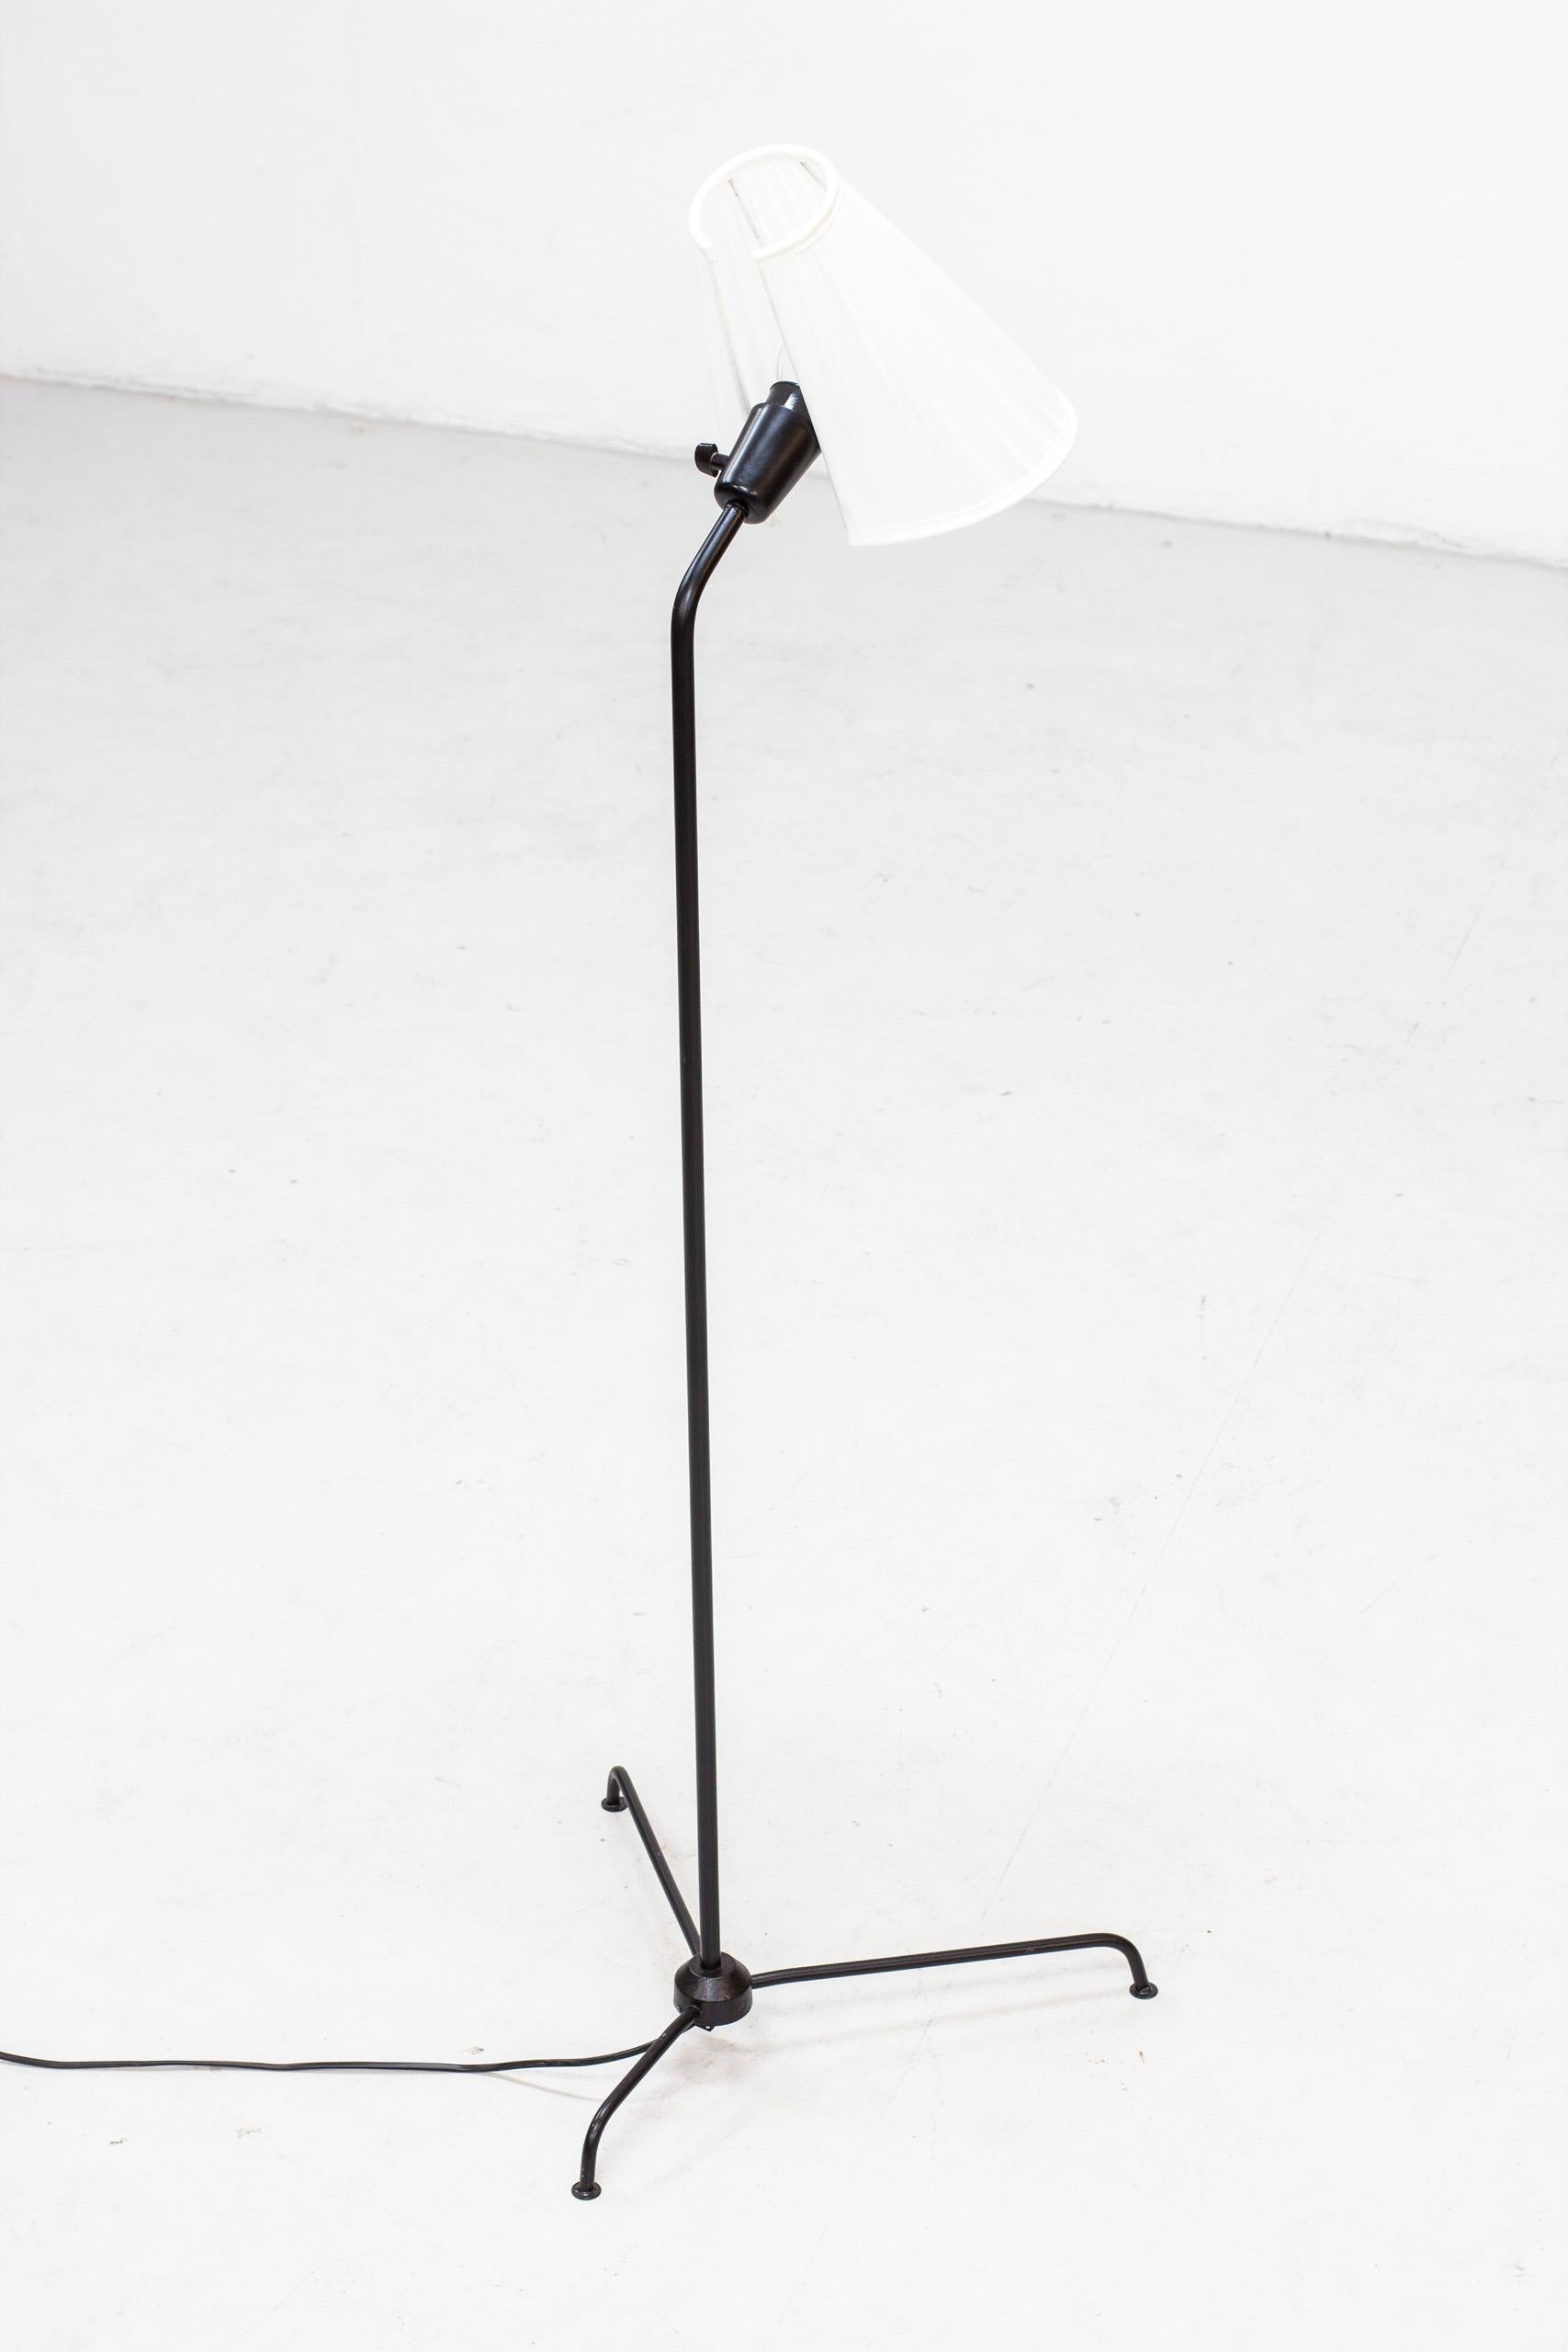 Von Eje Ahlgren entworfene Stehleuchte, die in den 1950er Jahren von Luco in Schweden hergestellt wurde. Aus schwarz lackiertem Metall mit originalem Lampenschirm, der mit weißem Chintz-Stoff neu bezogen ist. Funktionstüchtiger